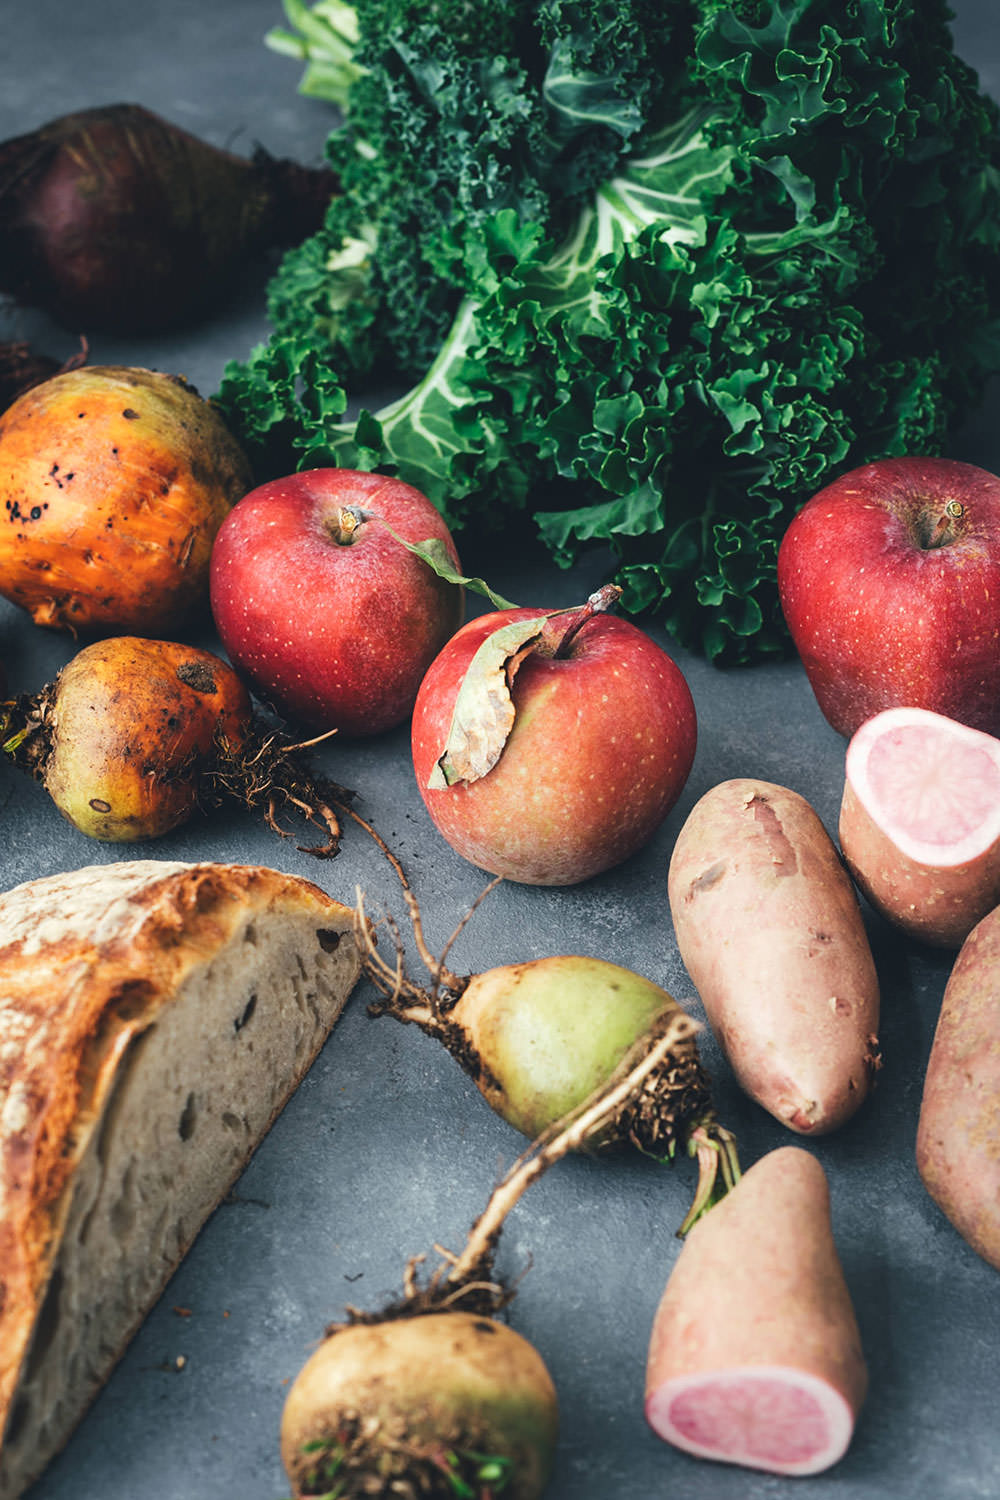 Rezept für Herbst Panzanella – Brotsalat mit regionalem Kohl, bunter Bete, roten Kartoffeln und Apfel | mit Vorstellung einer Schwärmerei von Marktschwärmer – dem regionalen Feierabend-Bauernmarkt, über 90 Mal in Deutschland | moeyskitchen.com #panzanella #herbst #salat #herbstsalat #brotsalat #regional #saisonal #nachhaltig #nachhaltigkeit #rezept #foodblog #marktschwärmer #schwärmerei #einkaufen #lebensmittel #bauernmarkt